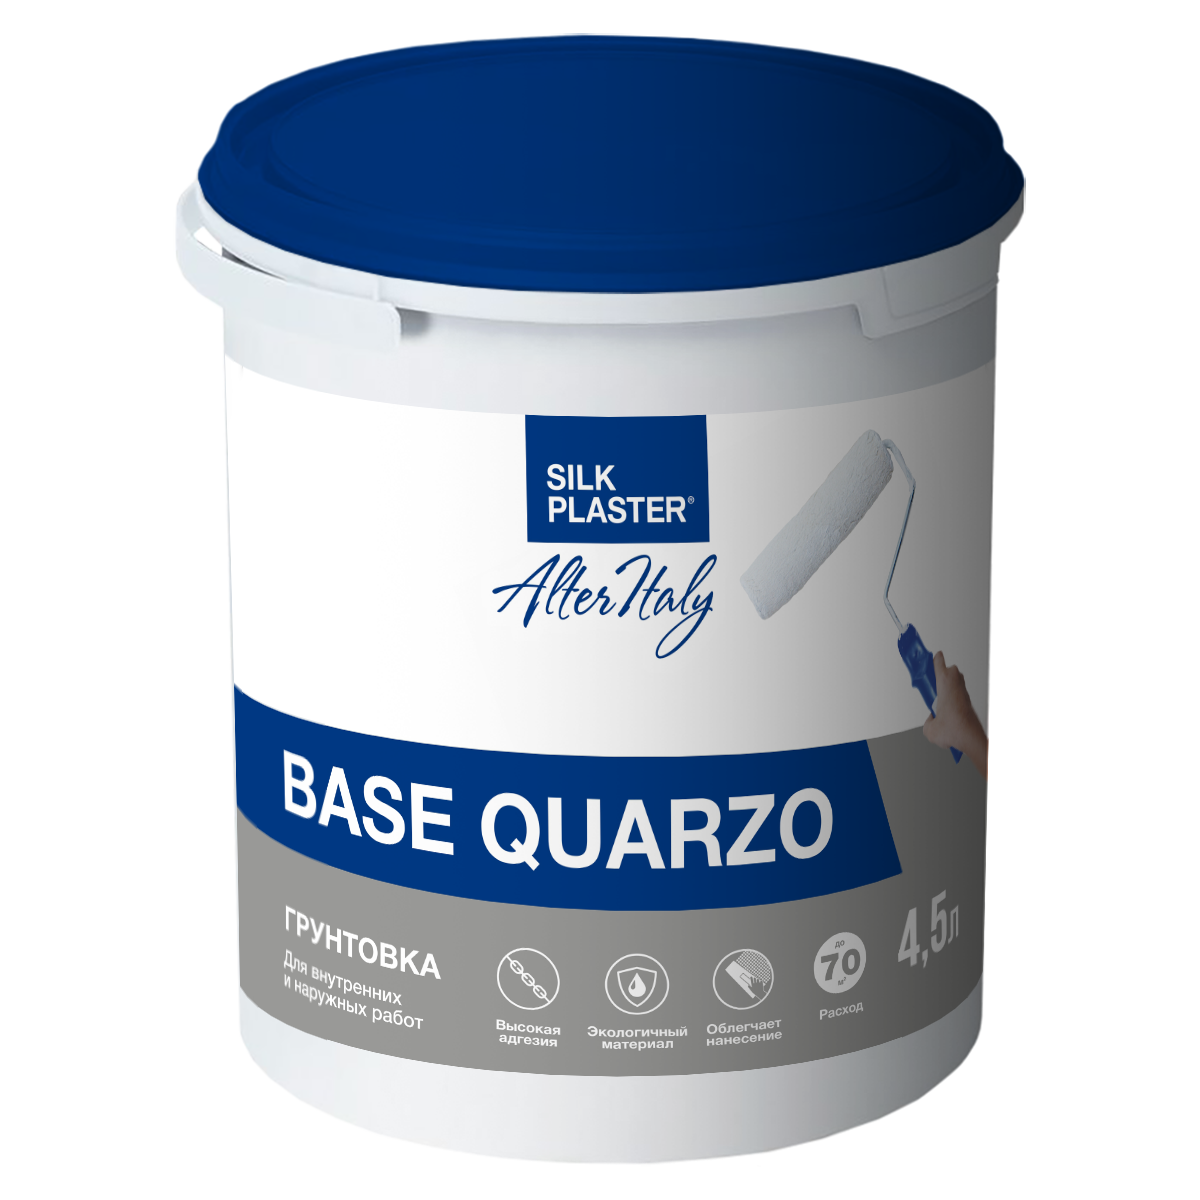 Инструкция по использованию грунтовки   AlterItaly Base Quarzo